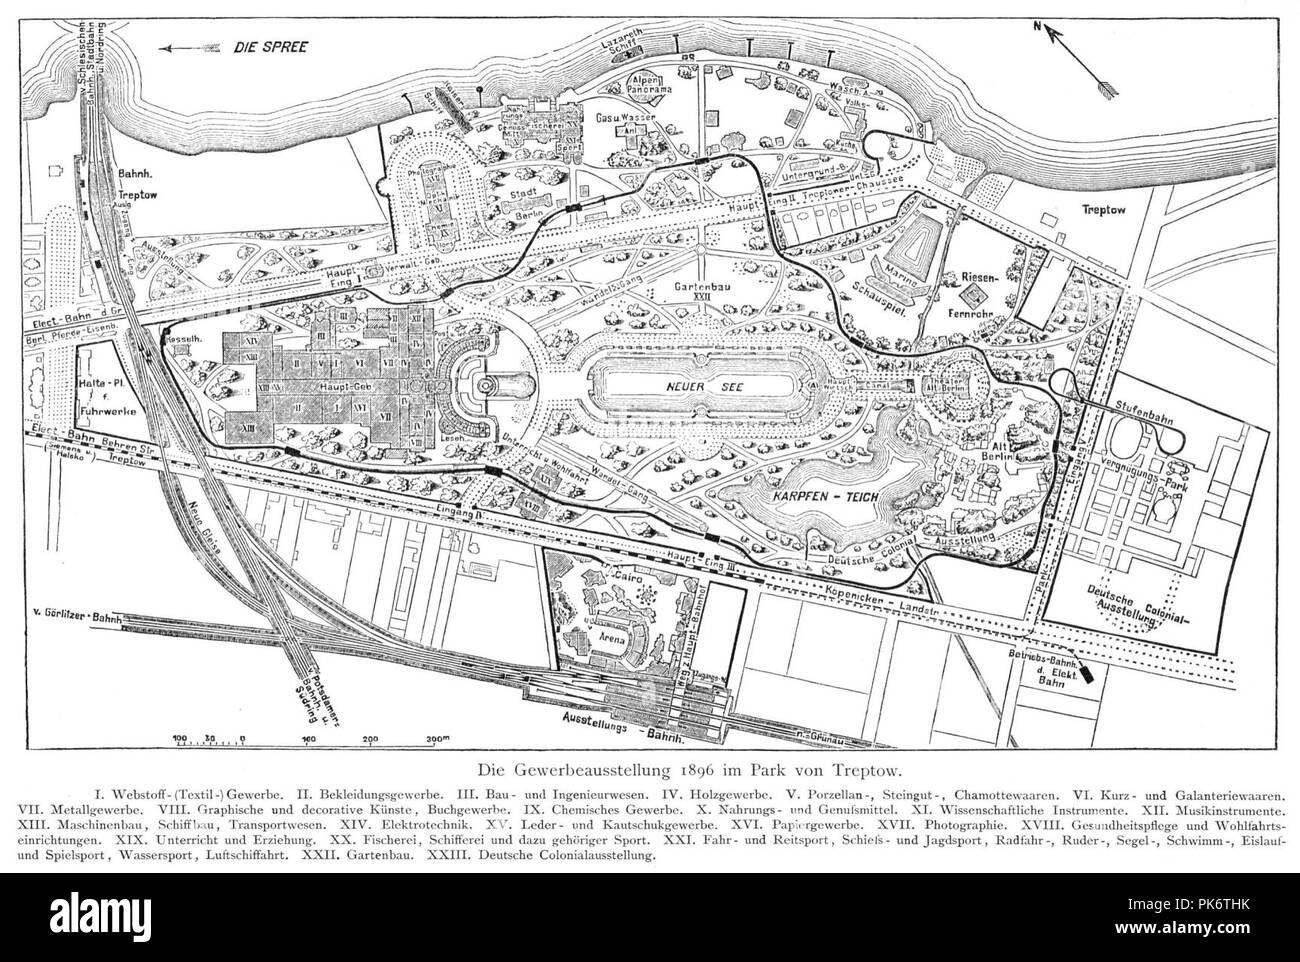 Berlin Gewerbeausstellung 1896 Plan. Stock Photo